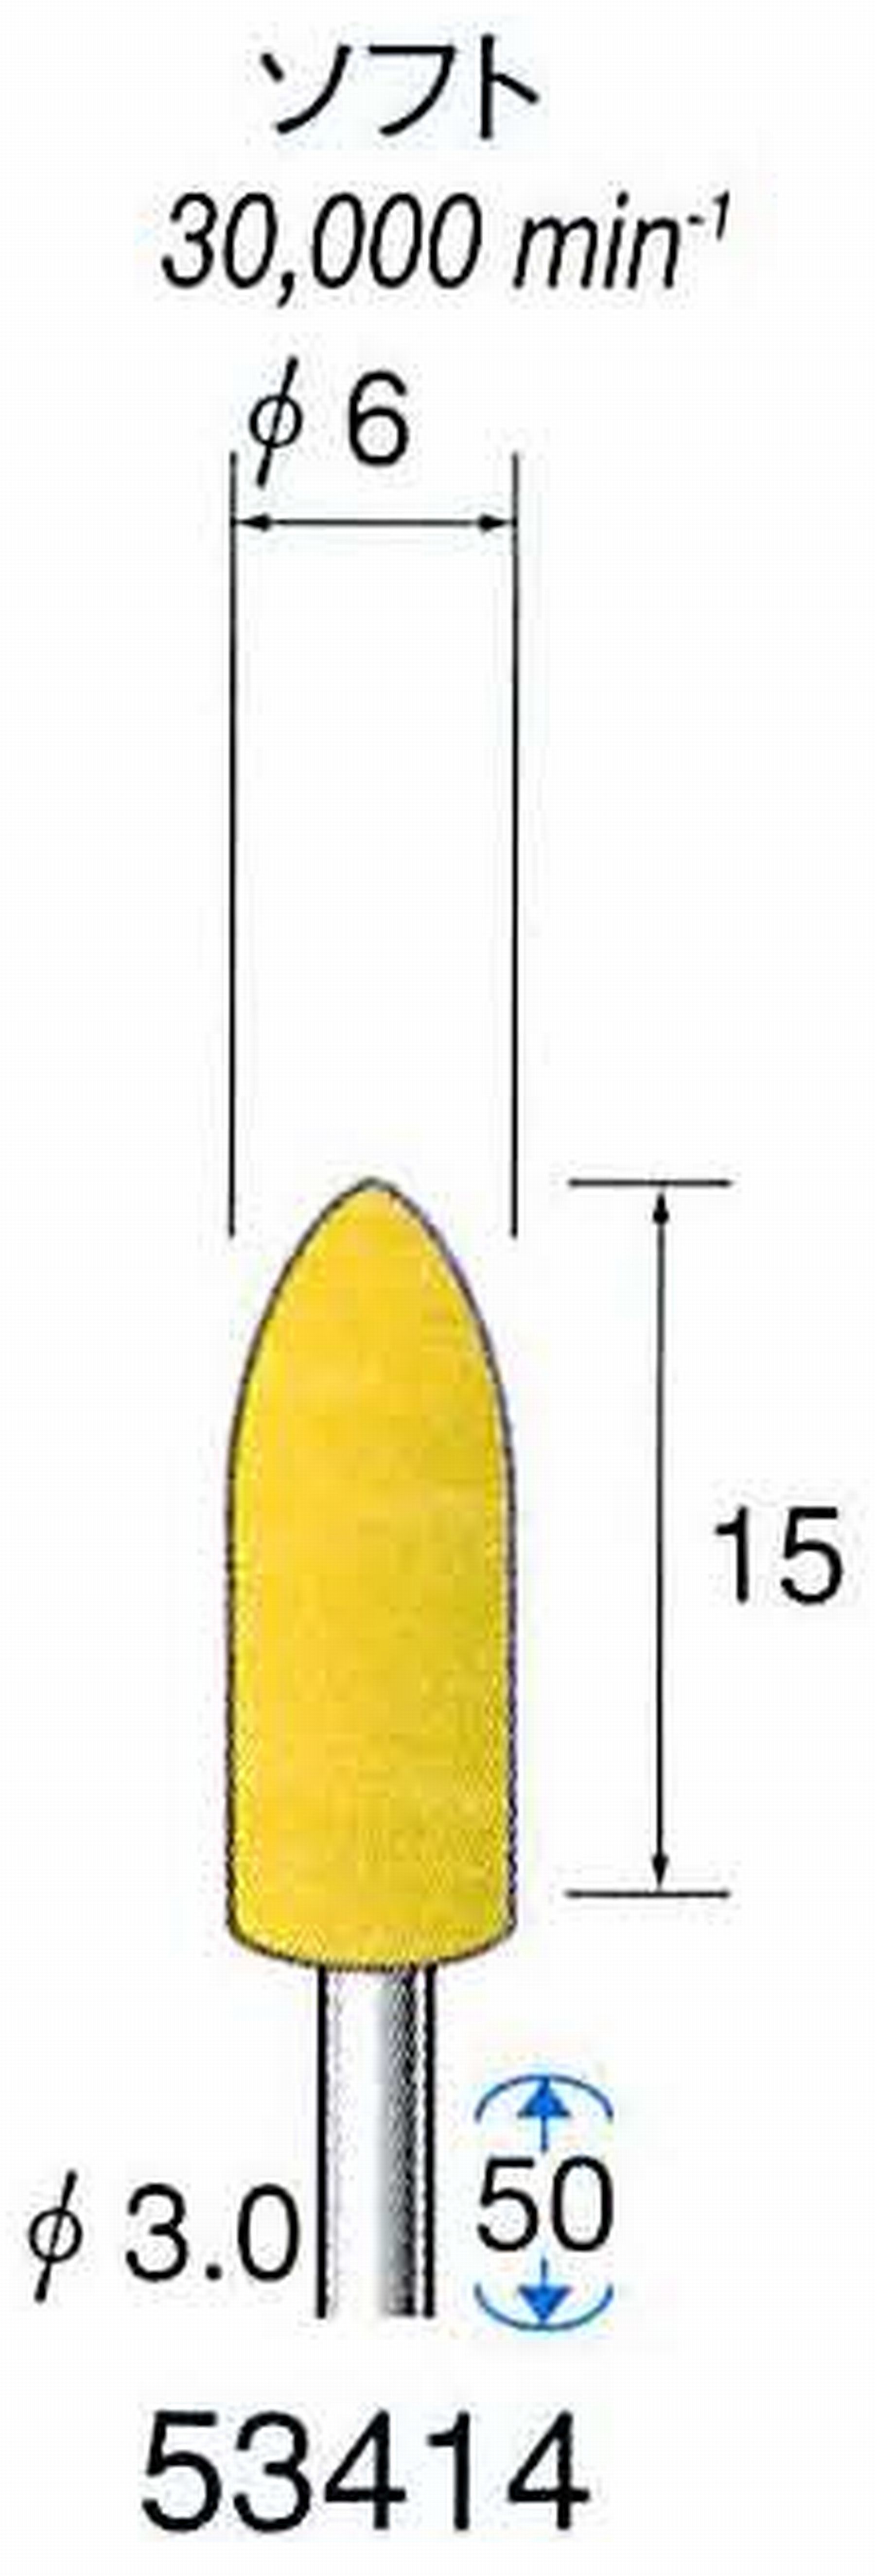 ナカニシ/NAKANISHI イエローフェルトバフ ソフト(研磨材入り) WA(アルミナ)含浸タイプ 軸径(シャンク)φ3.0mm 53414